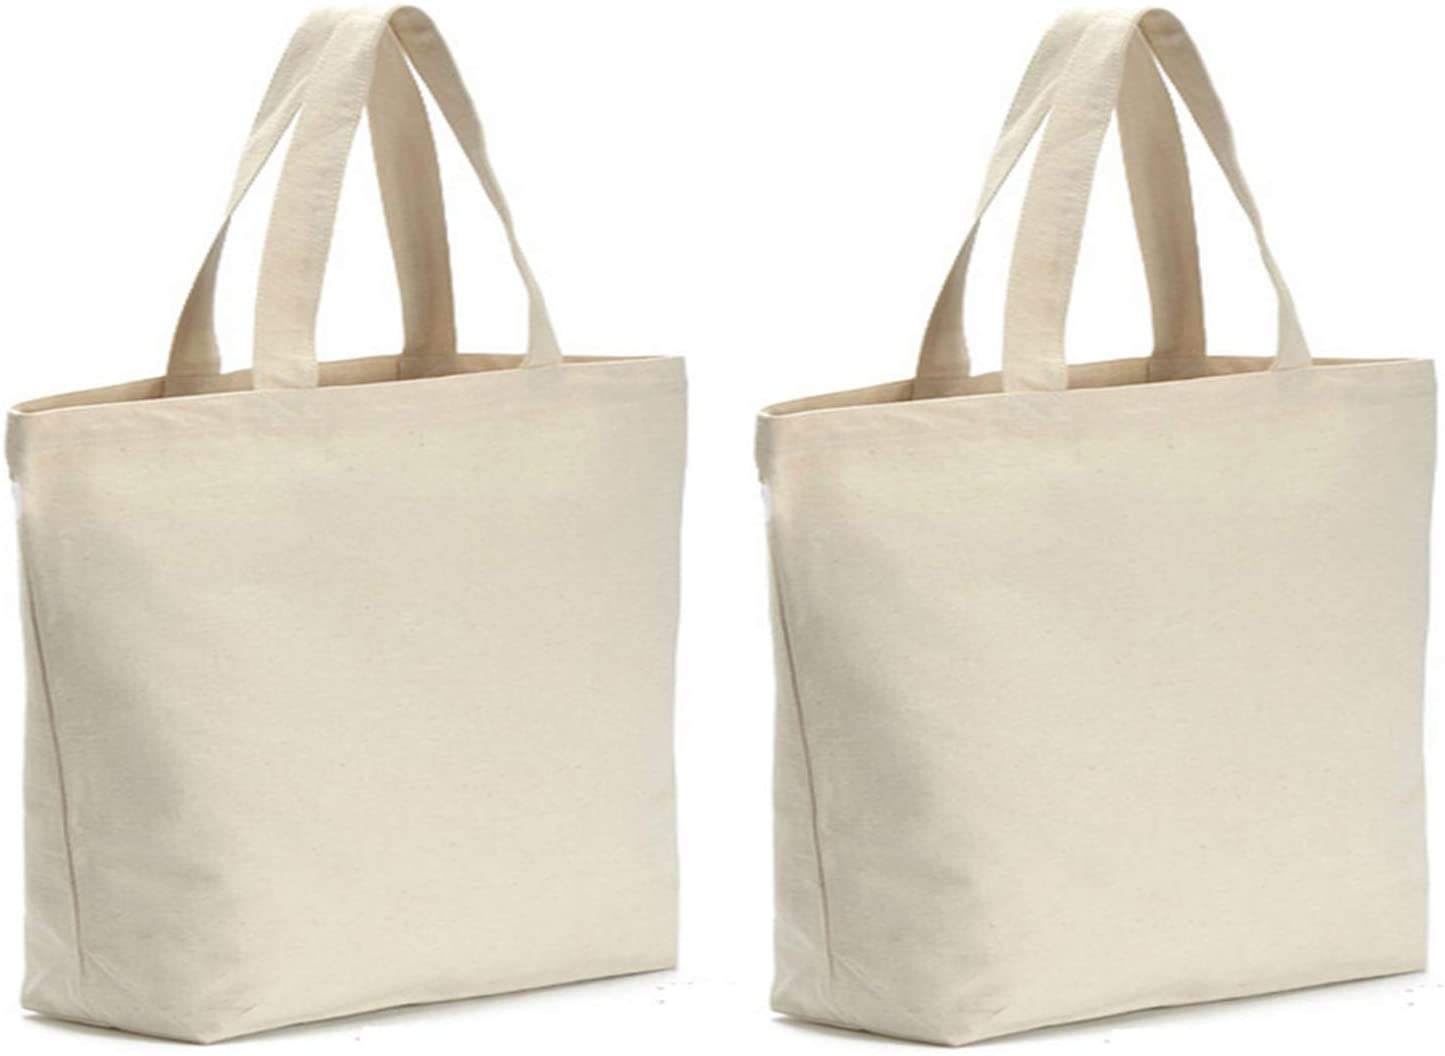 Bolsas de lona orgánicas ecológicas de alta calidad, bolsas de algodón plegables a granel para compras